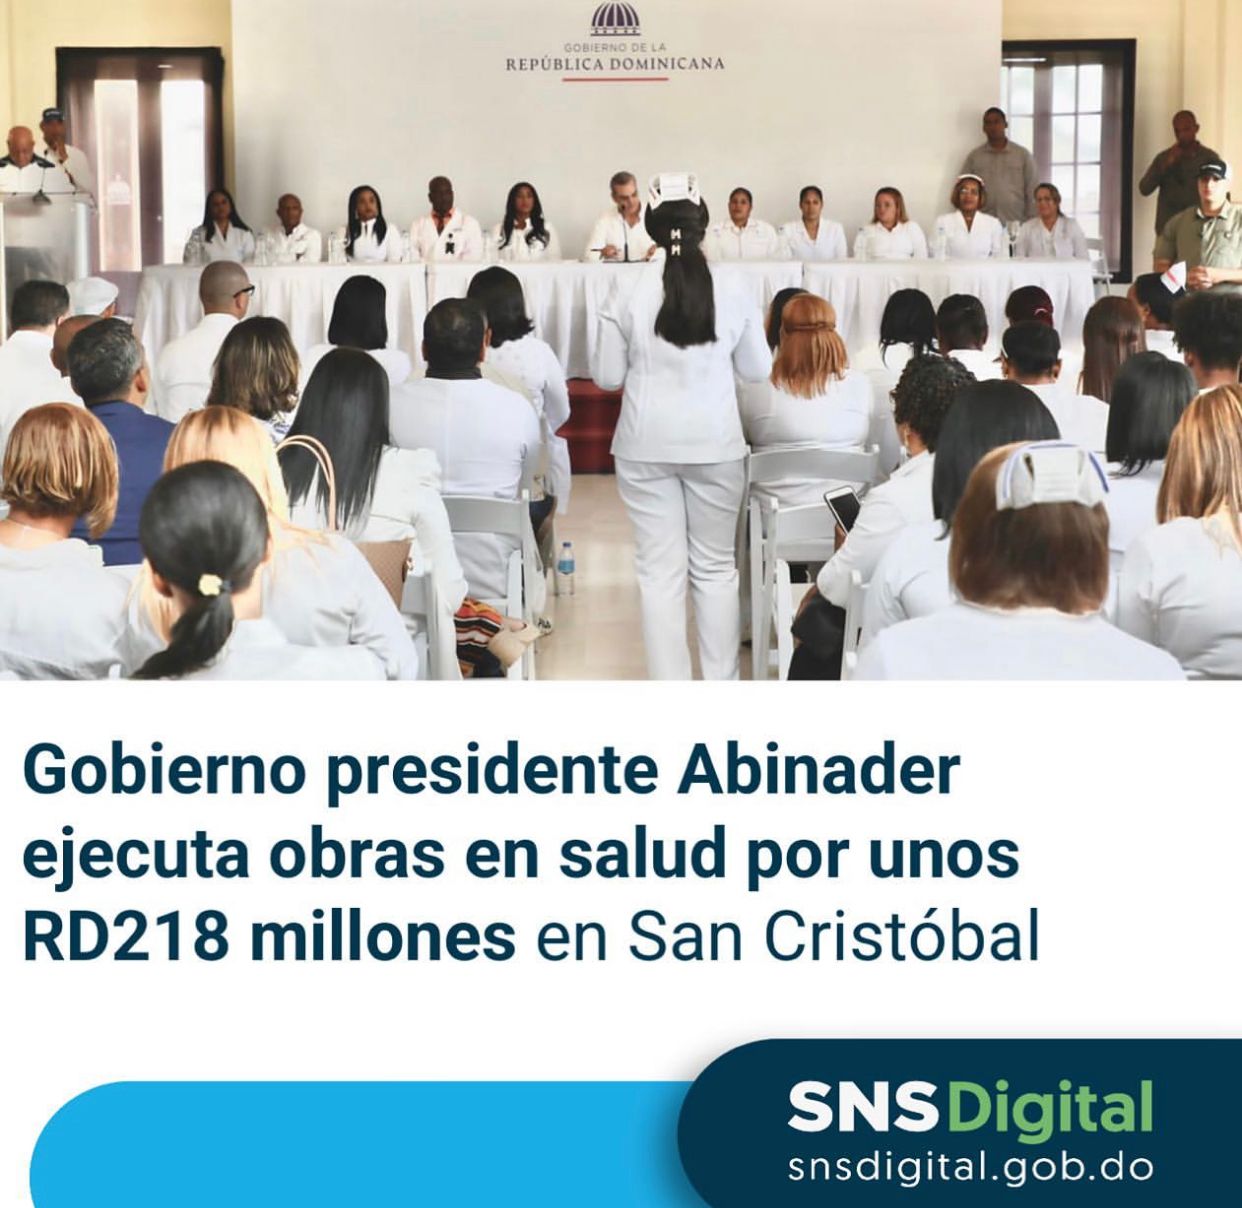 You are currently viewing Gobierno presidente Abinader ejecuta obras en salud por unos RD218 millones en San Cristóbal